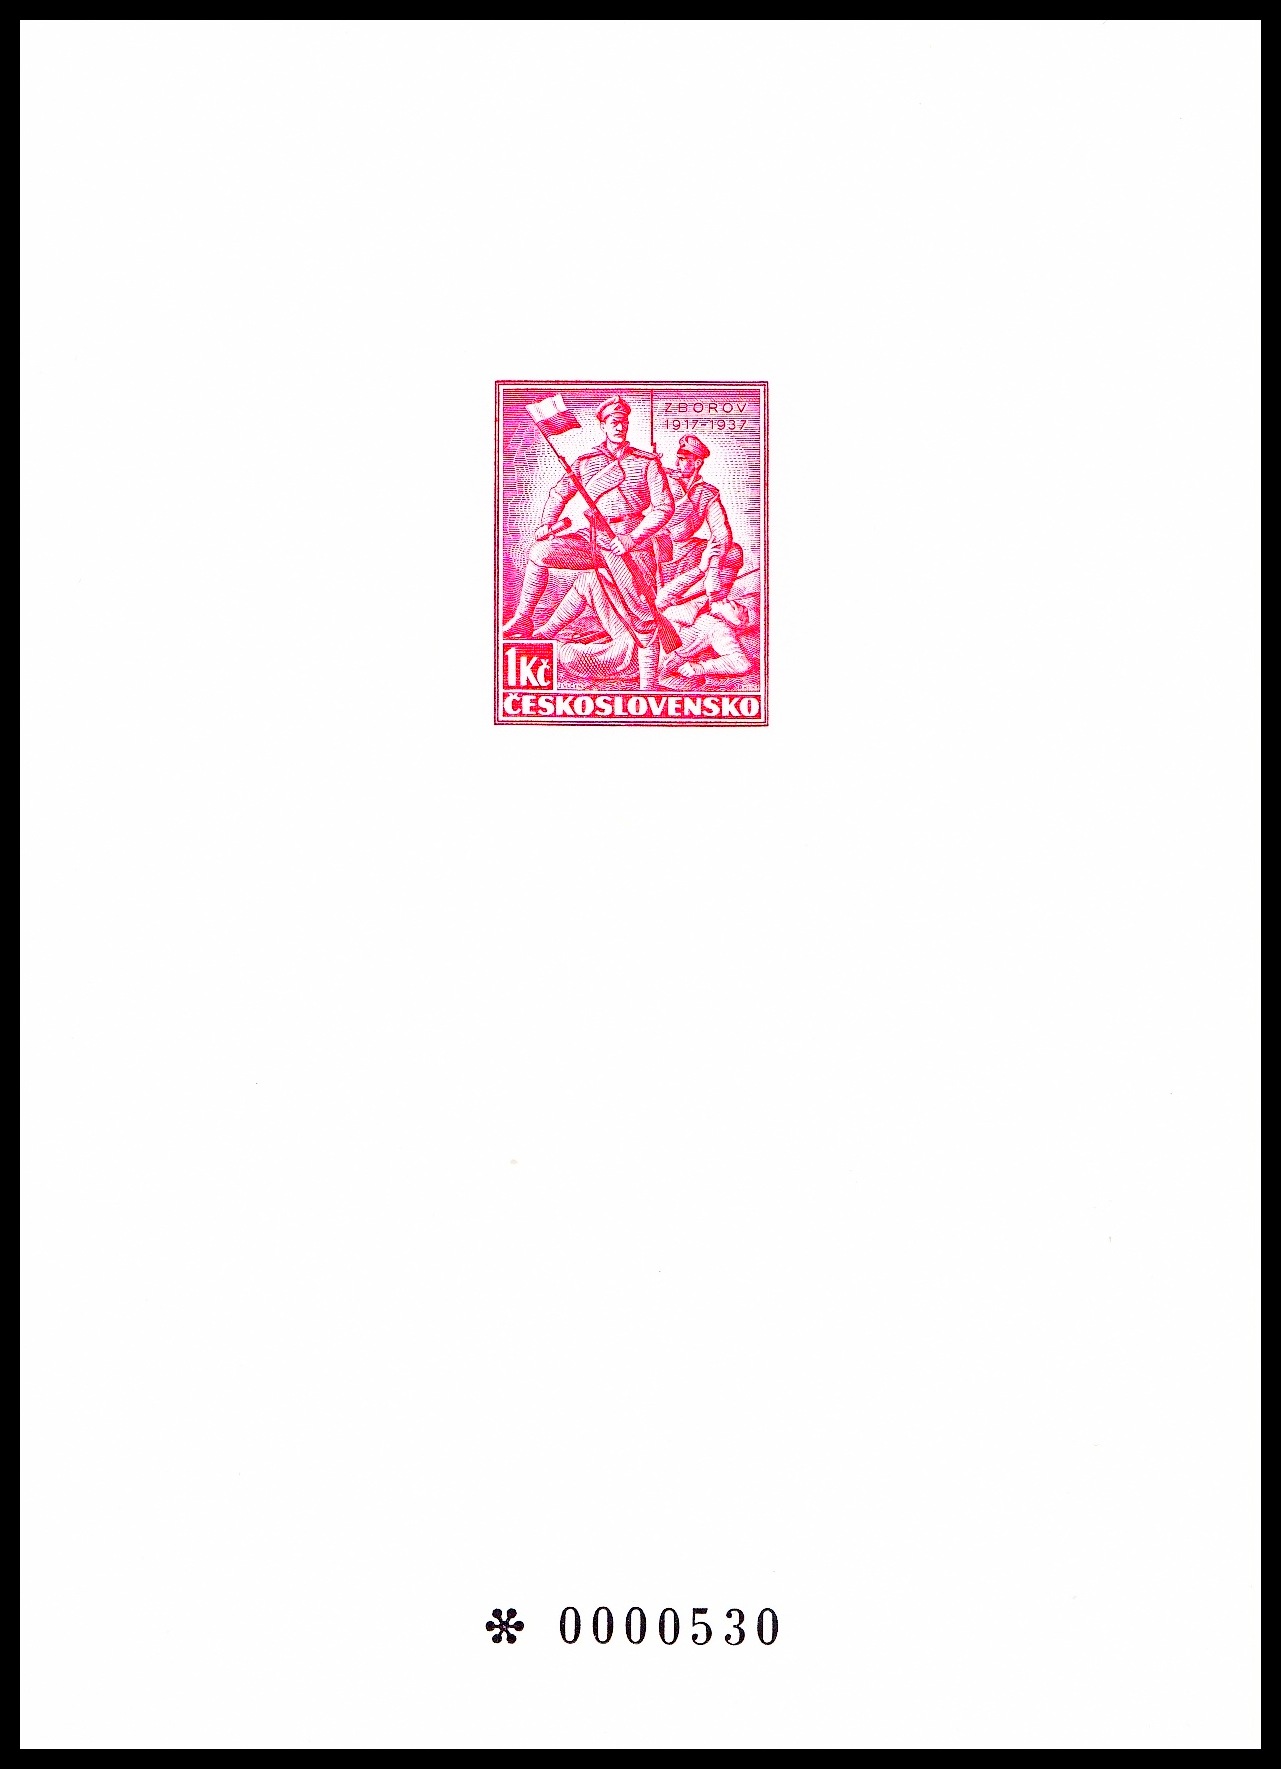 Černotisk - Pošta čs. vojsk v Rusku 1914 - 1920  (příloha monografie č. 7)